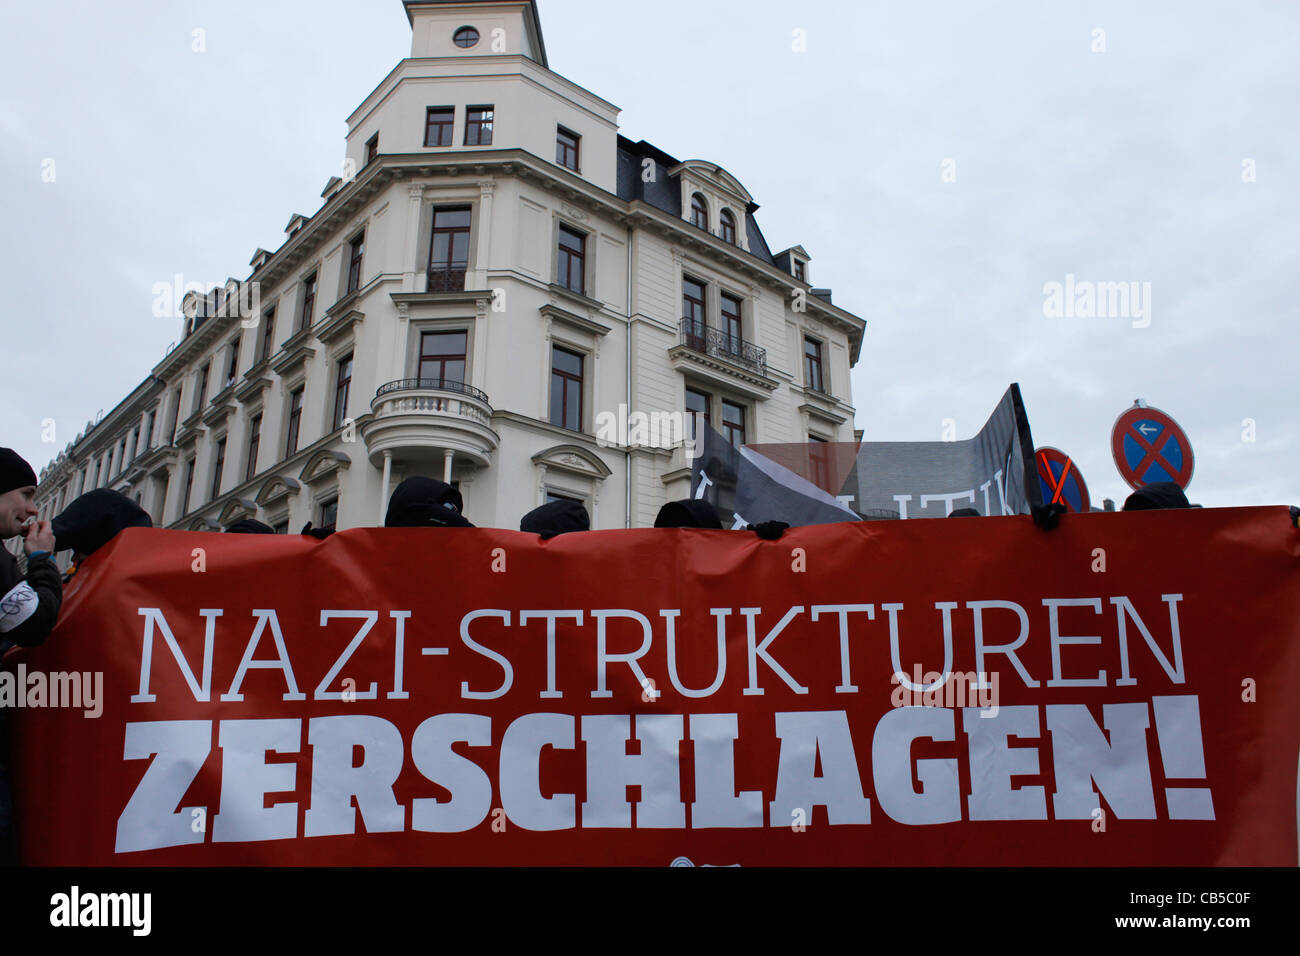 Los participantes antifascistas marchando durante una manifestación contra el extremismo de derecha y neonazis del partido NPD en el centro de Leipzig Alemania Foto de stock